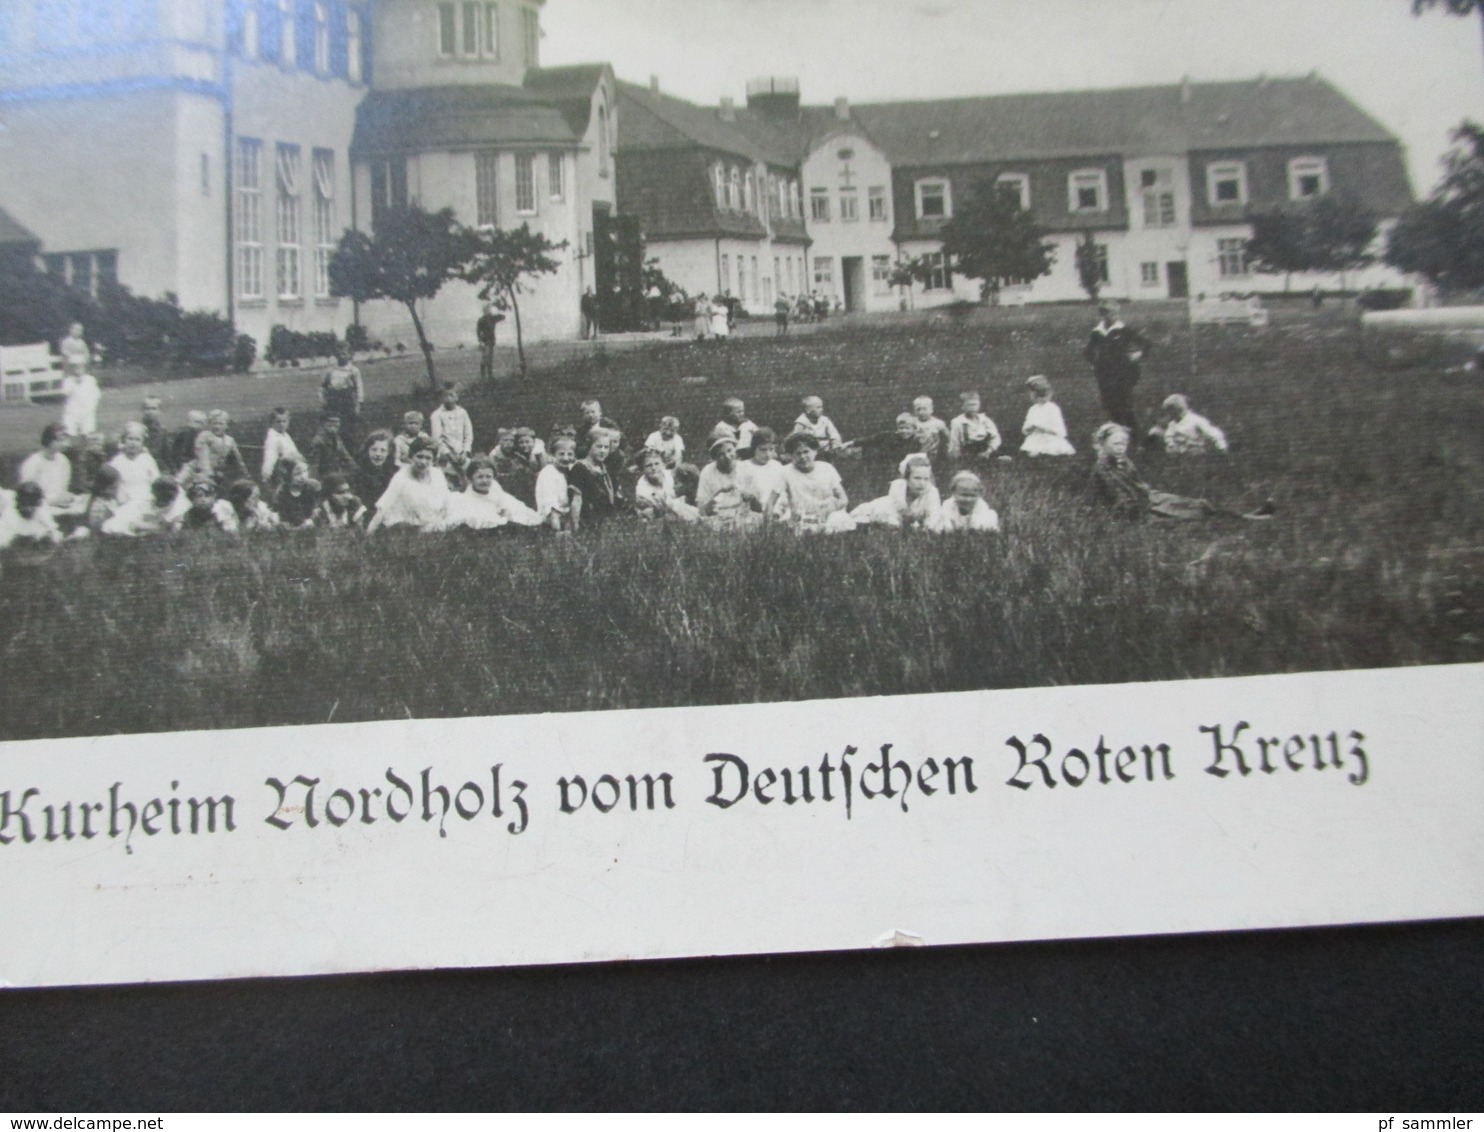 3.Reich Echtfoto AK Kindererholungs Und Kurheim Nordholz Vom Deutschen Roten Kreuz / DRK Nordholz Bei Cuxhaven - Red Cross